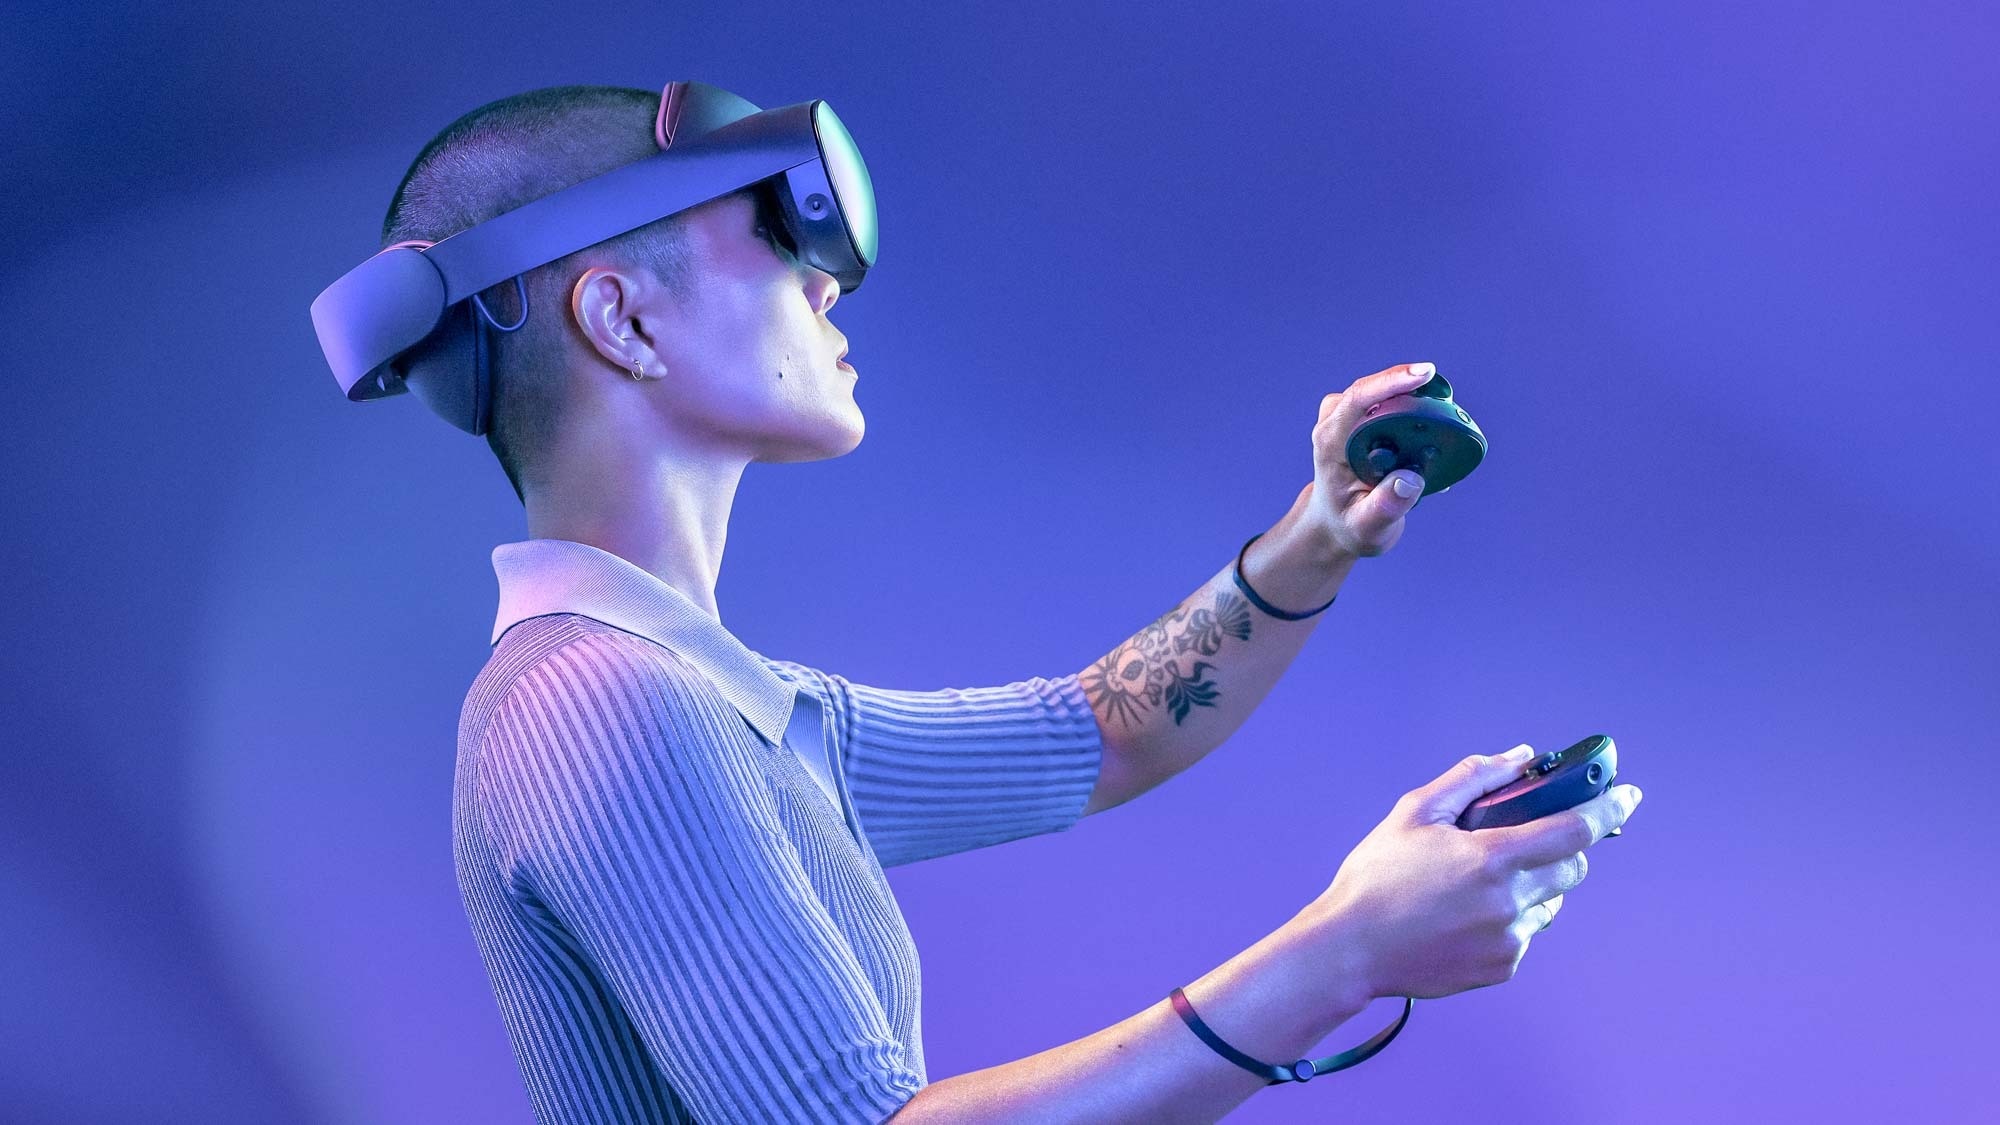 H Meta ανακοίνωσε το νέο VR headset με την ονομασία Quest Pro καθώς κυνηγά το όνειρο του metaverse